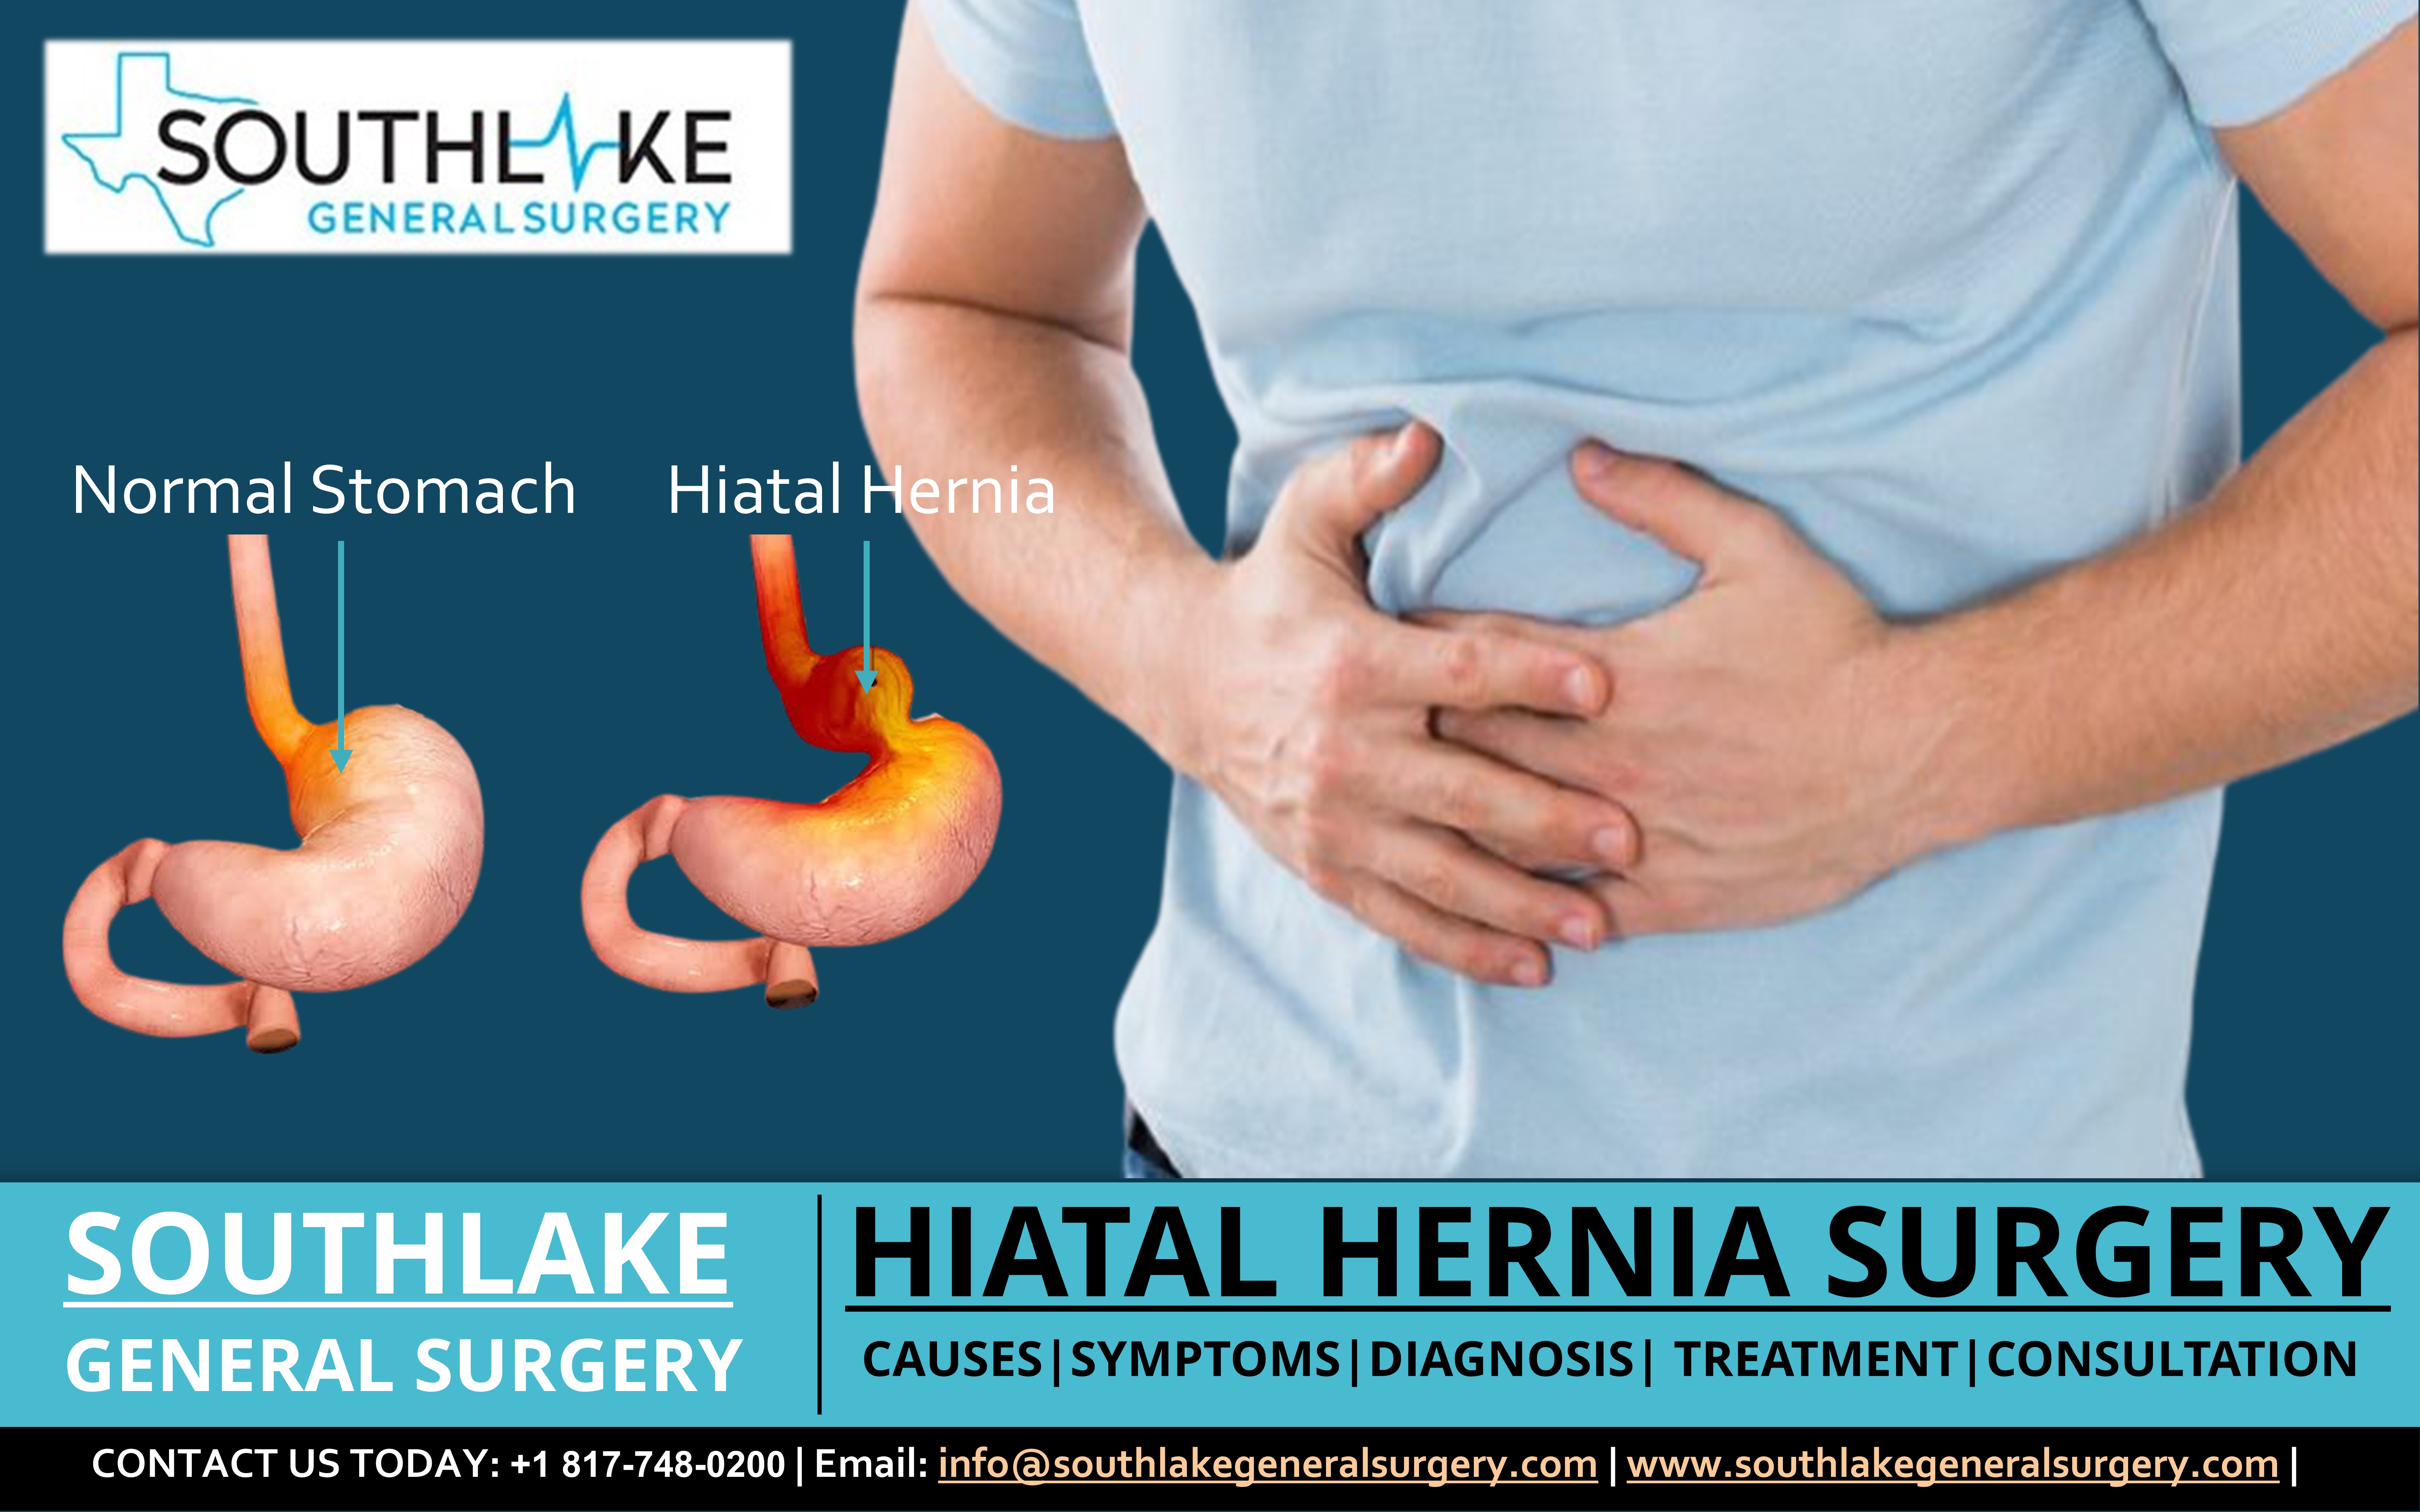 Hiatal Hernia Surgery at Southlake General Surgery, Texas